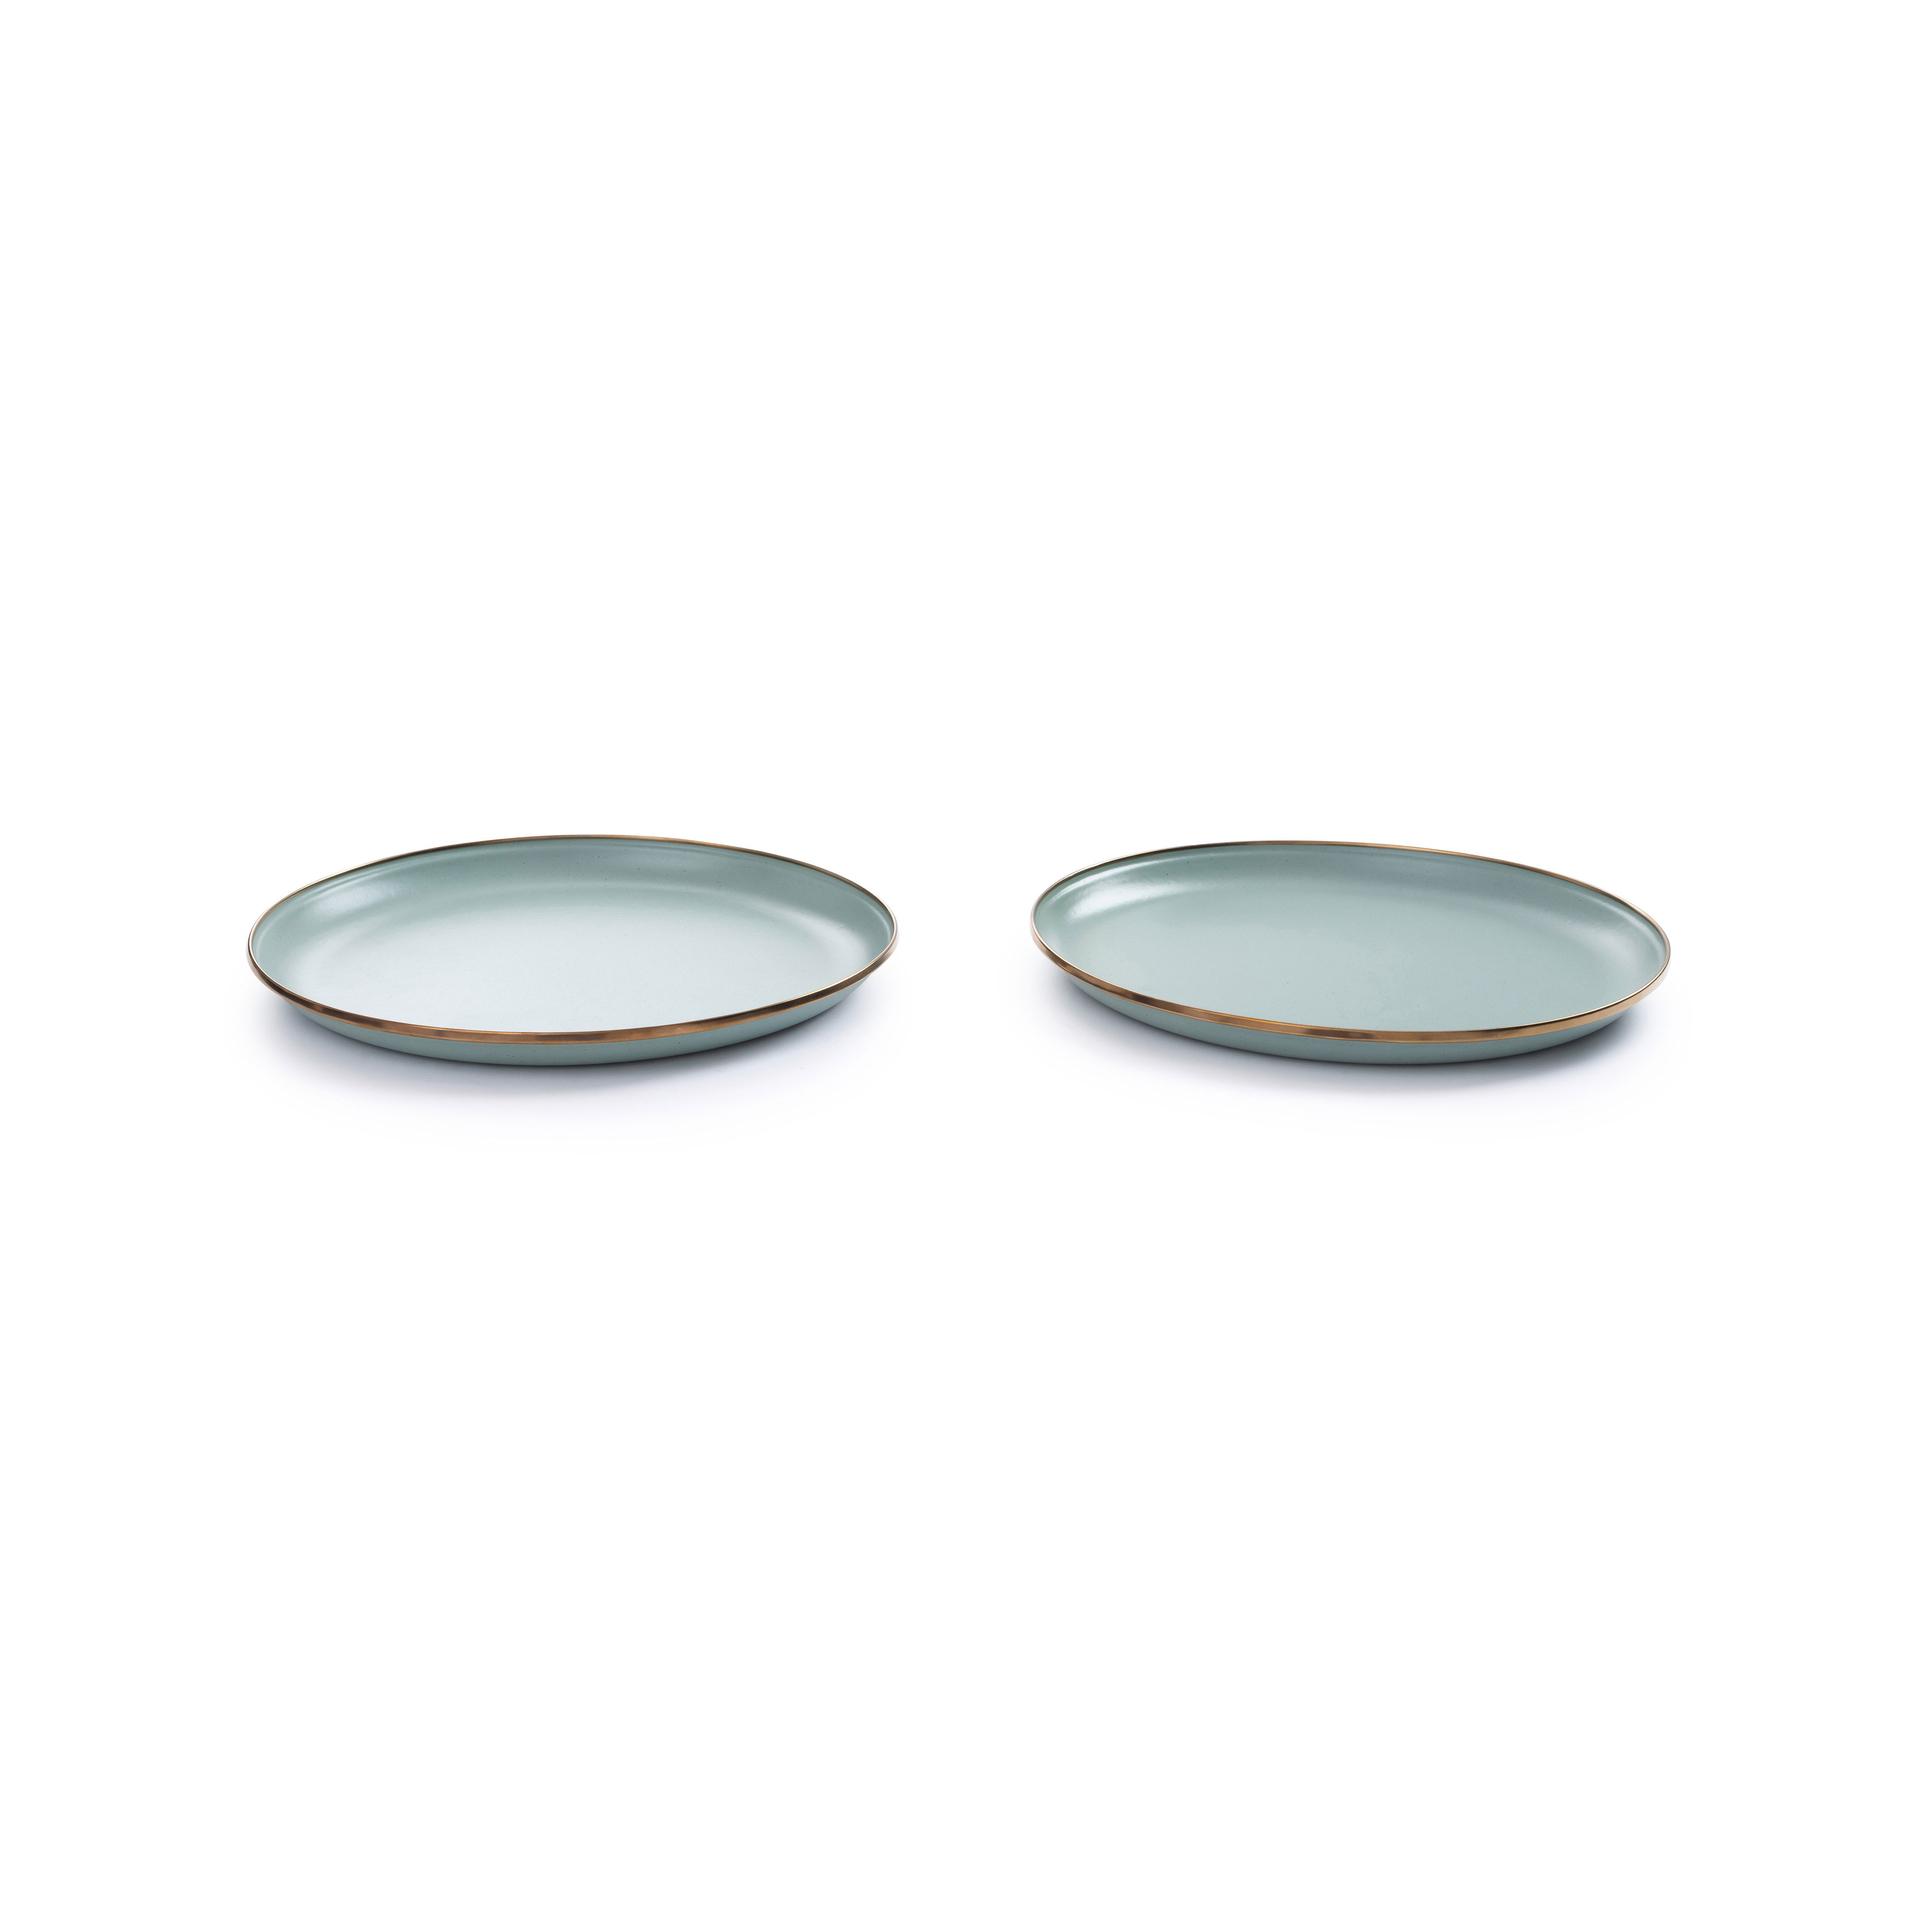 BAREBONES Enamel Plate 搪瓷碟 - 2 件套